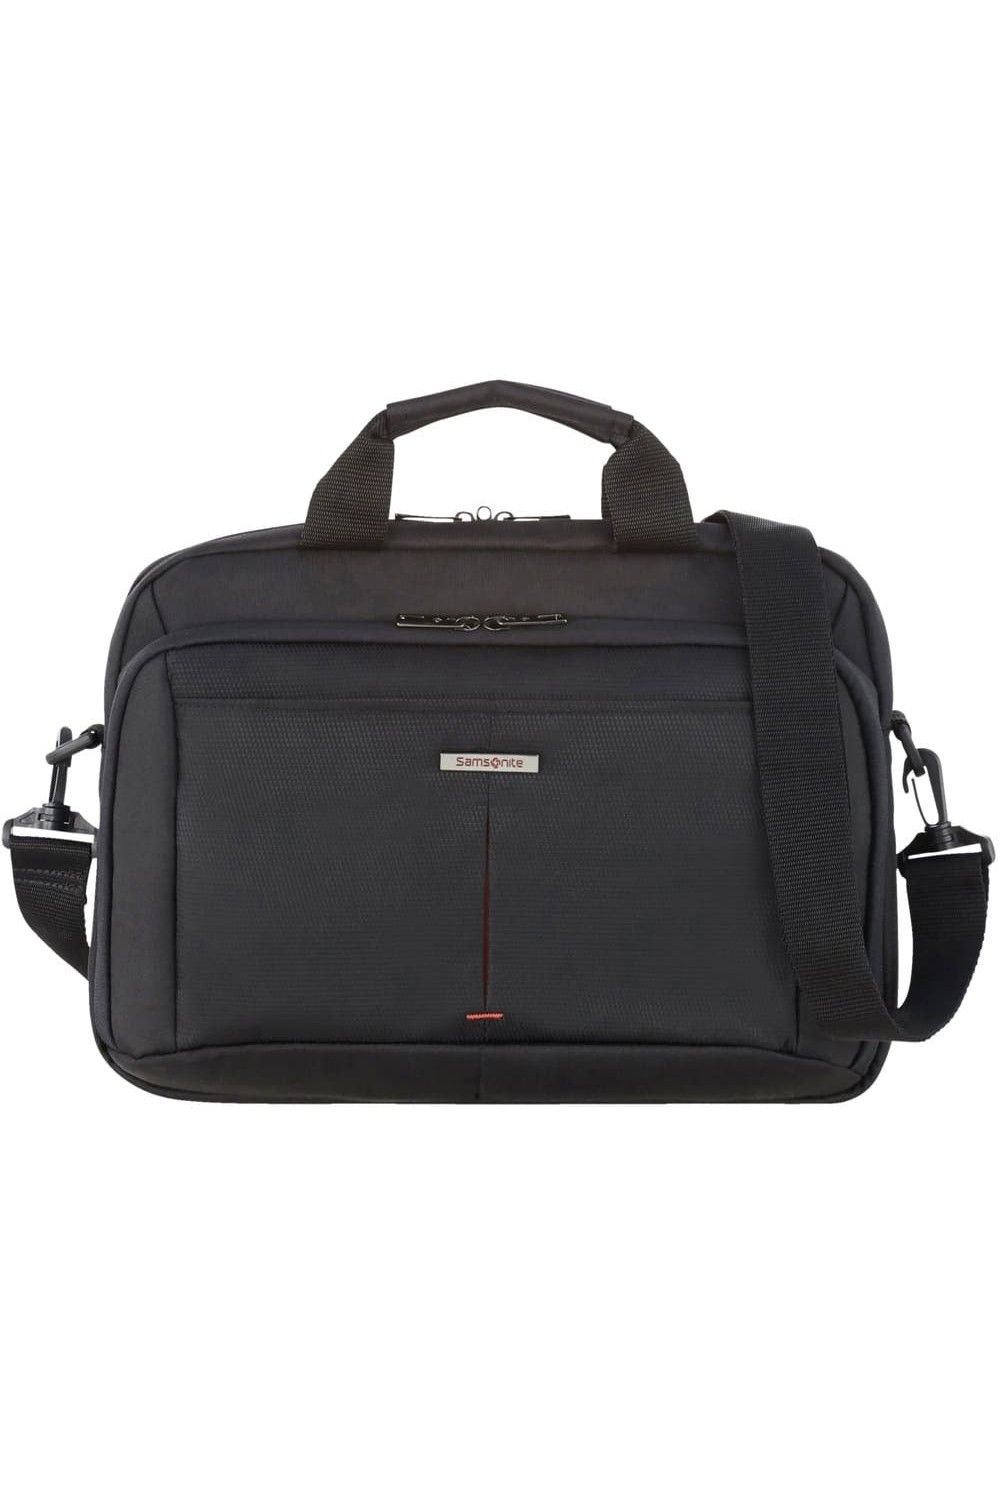 Samsonite Guardit 2.0 briefcase 13.3 inches